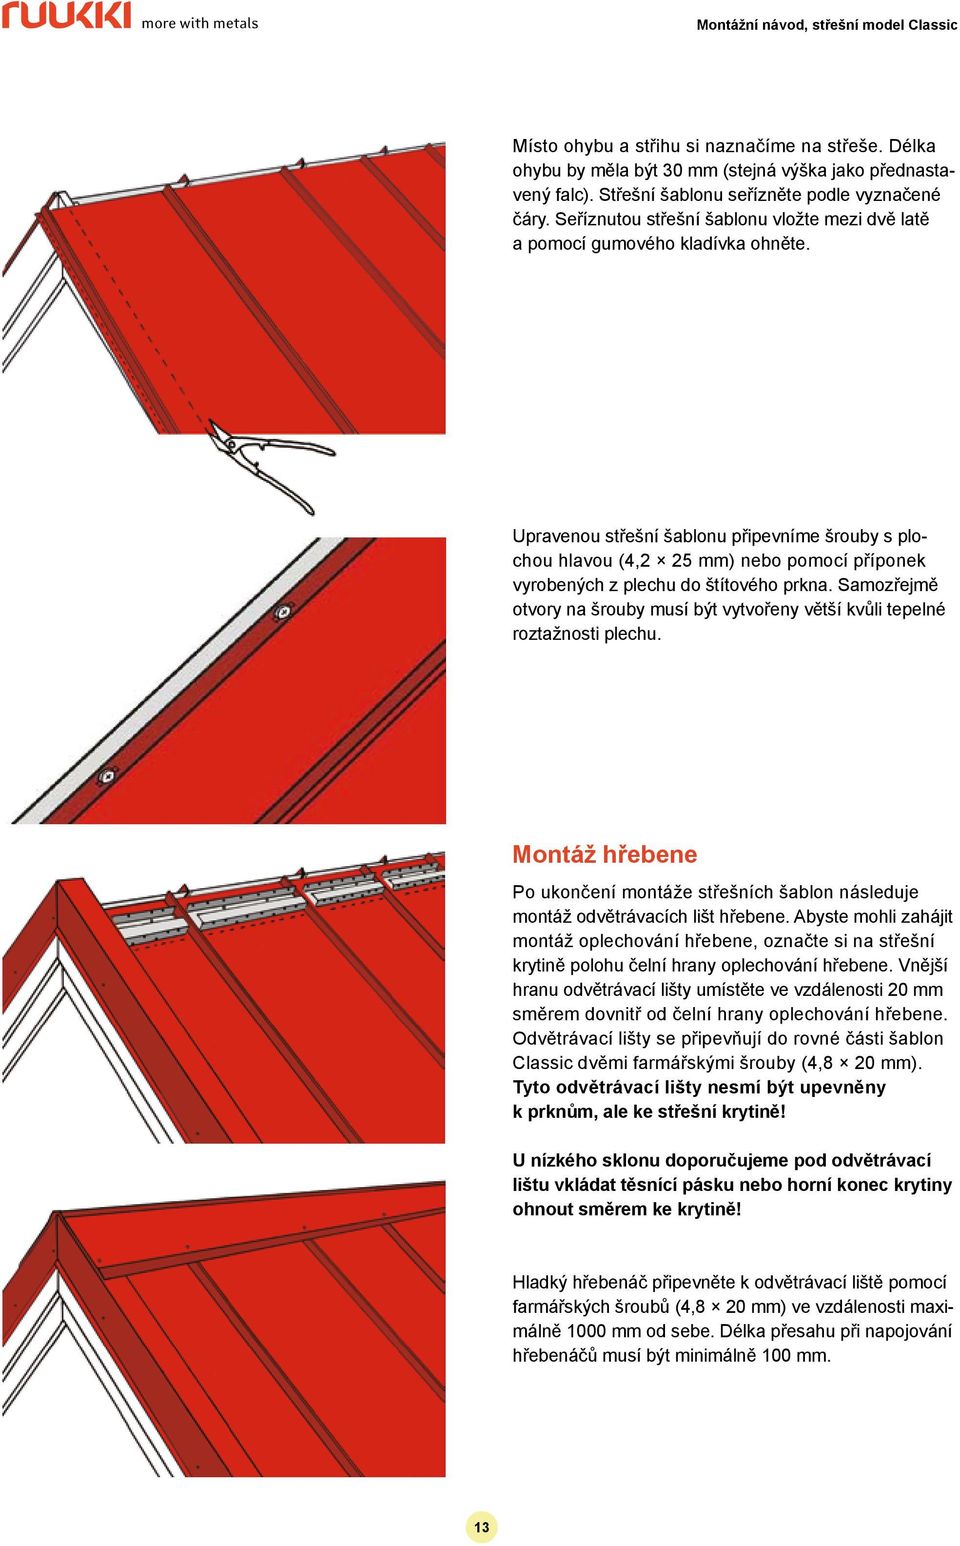 Střechy Montážní návod Střešní model Classic SR35-475D - PDF Free Download